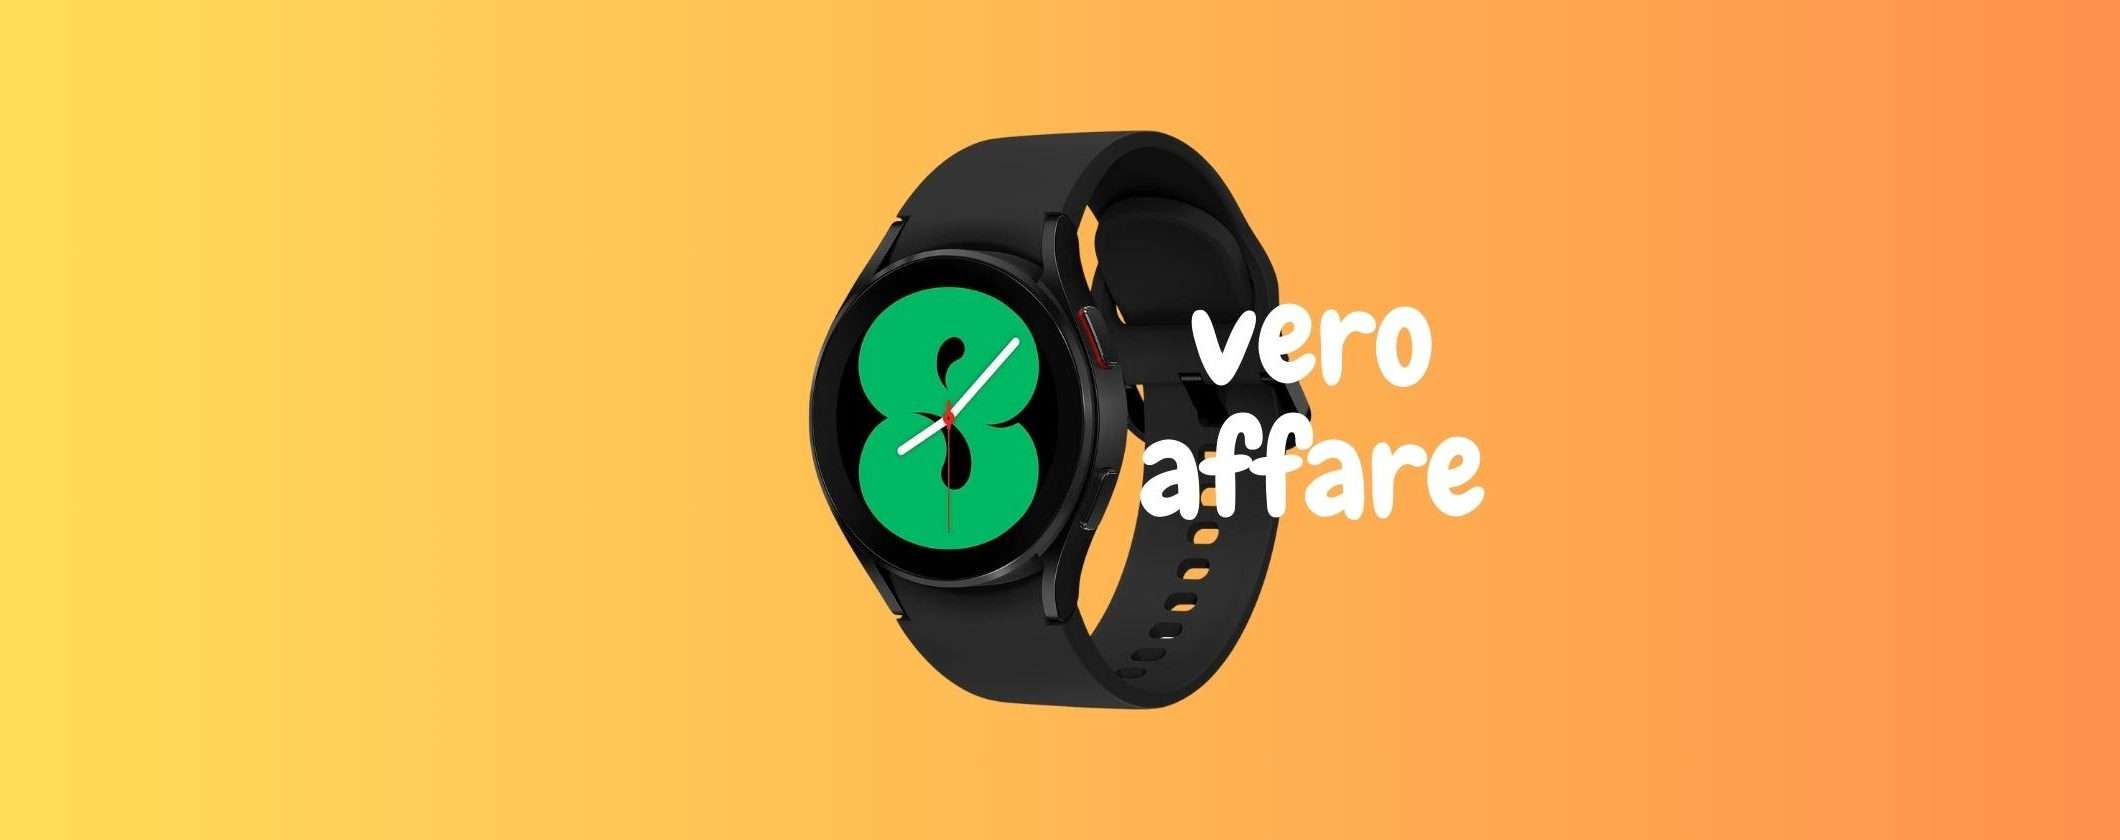 Samsung Galaxy Watch4: VERO AFFARE su Amazon